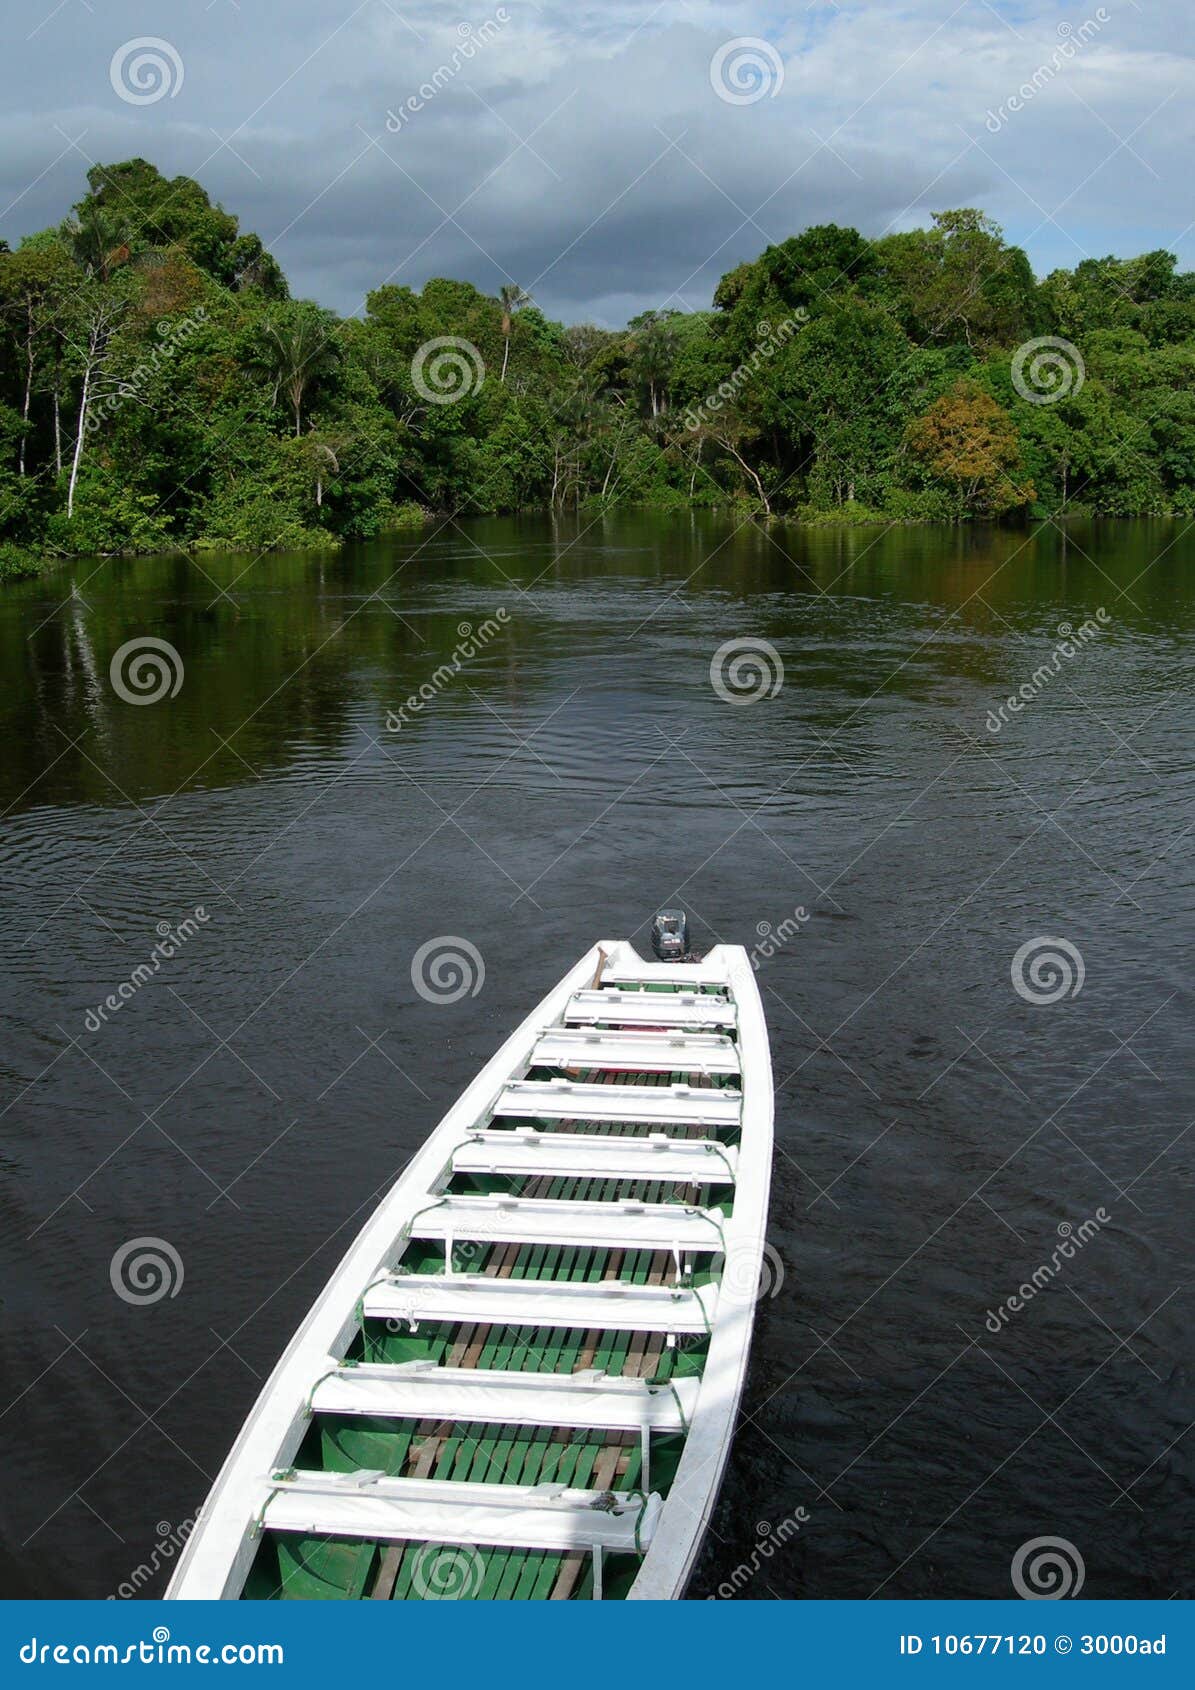 boat on rio negro, brazil